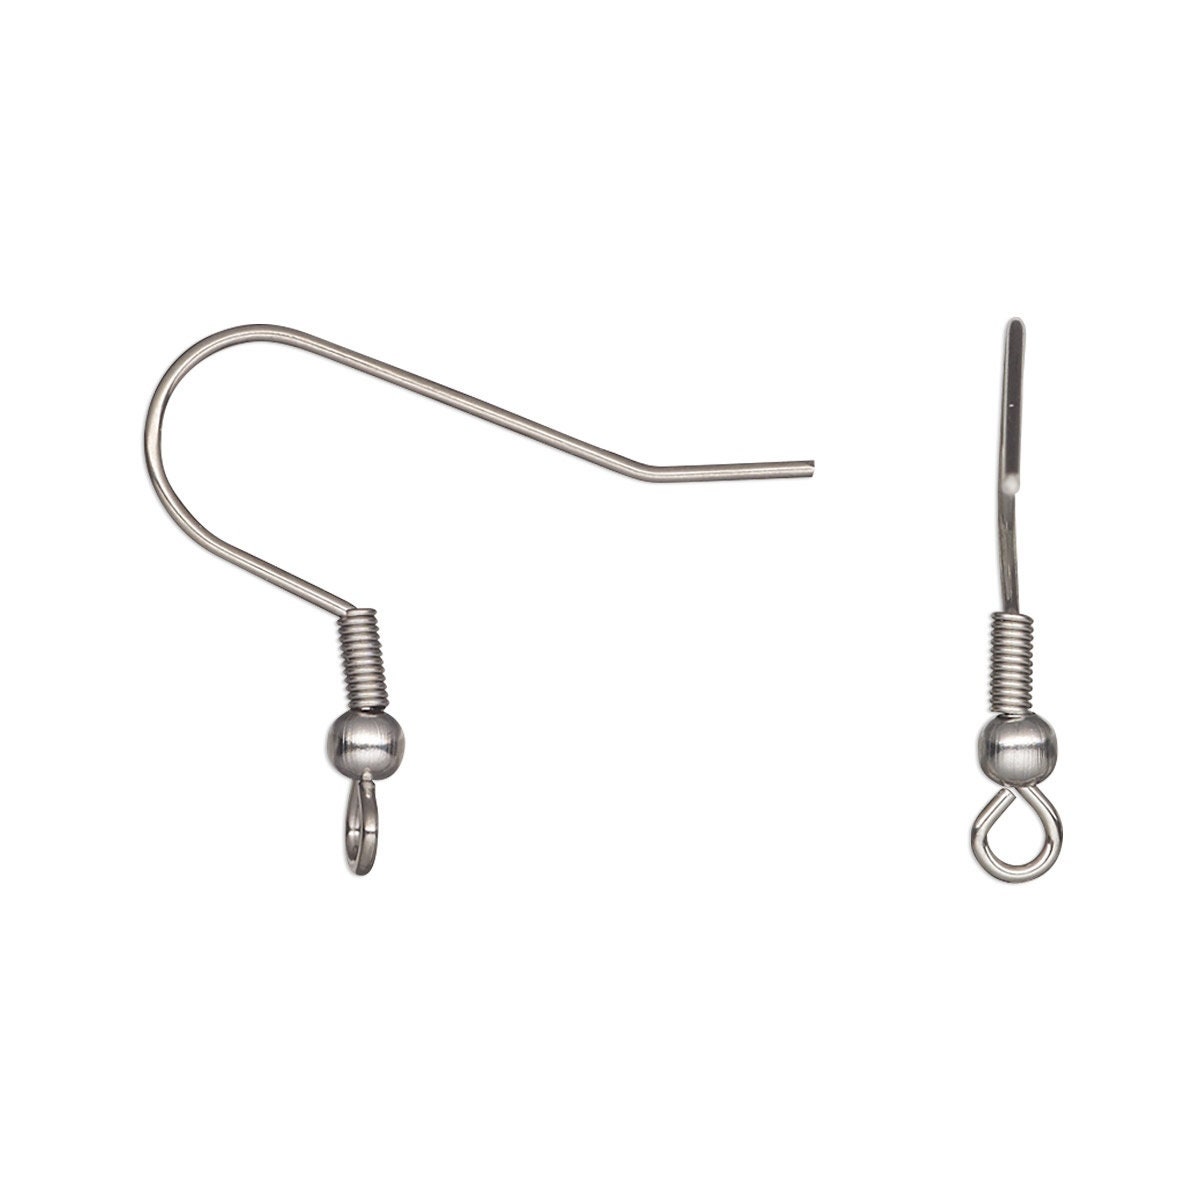 50,100,150,200pcs KC Gold Earring Hooks, Earwires Fish Hook